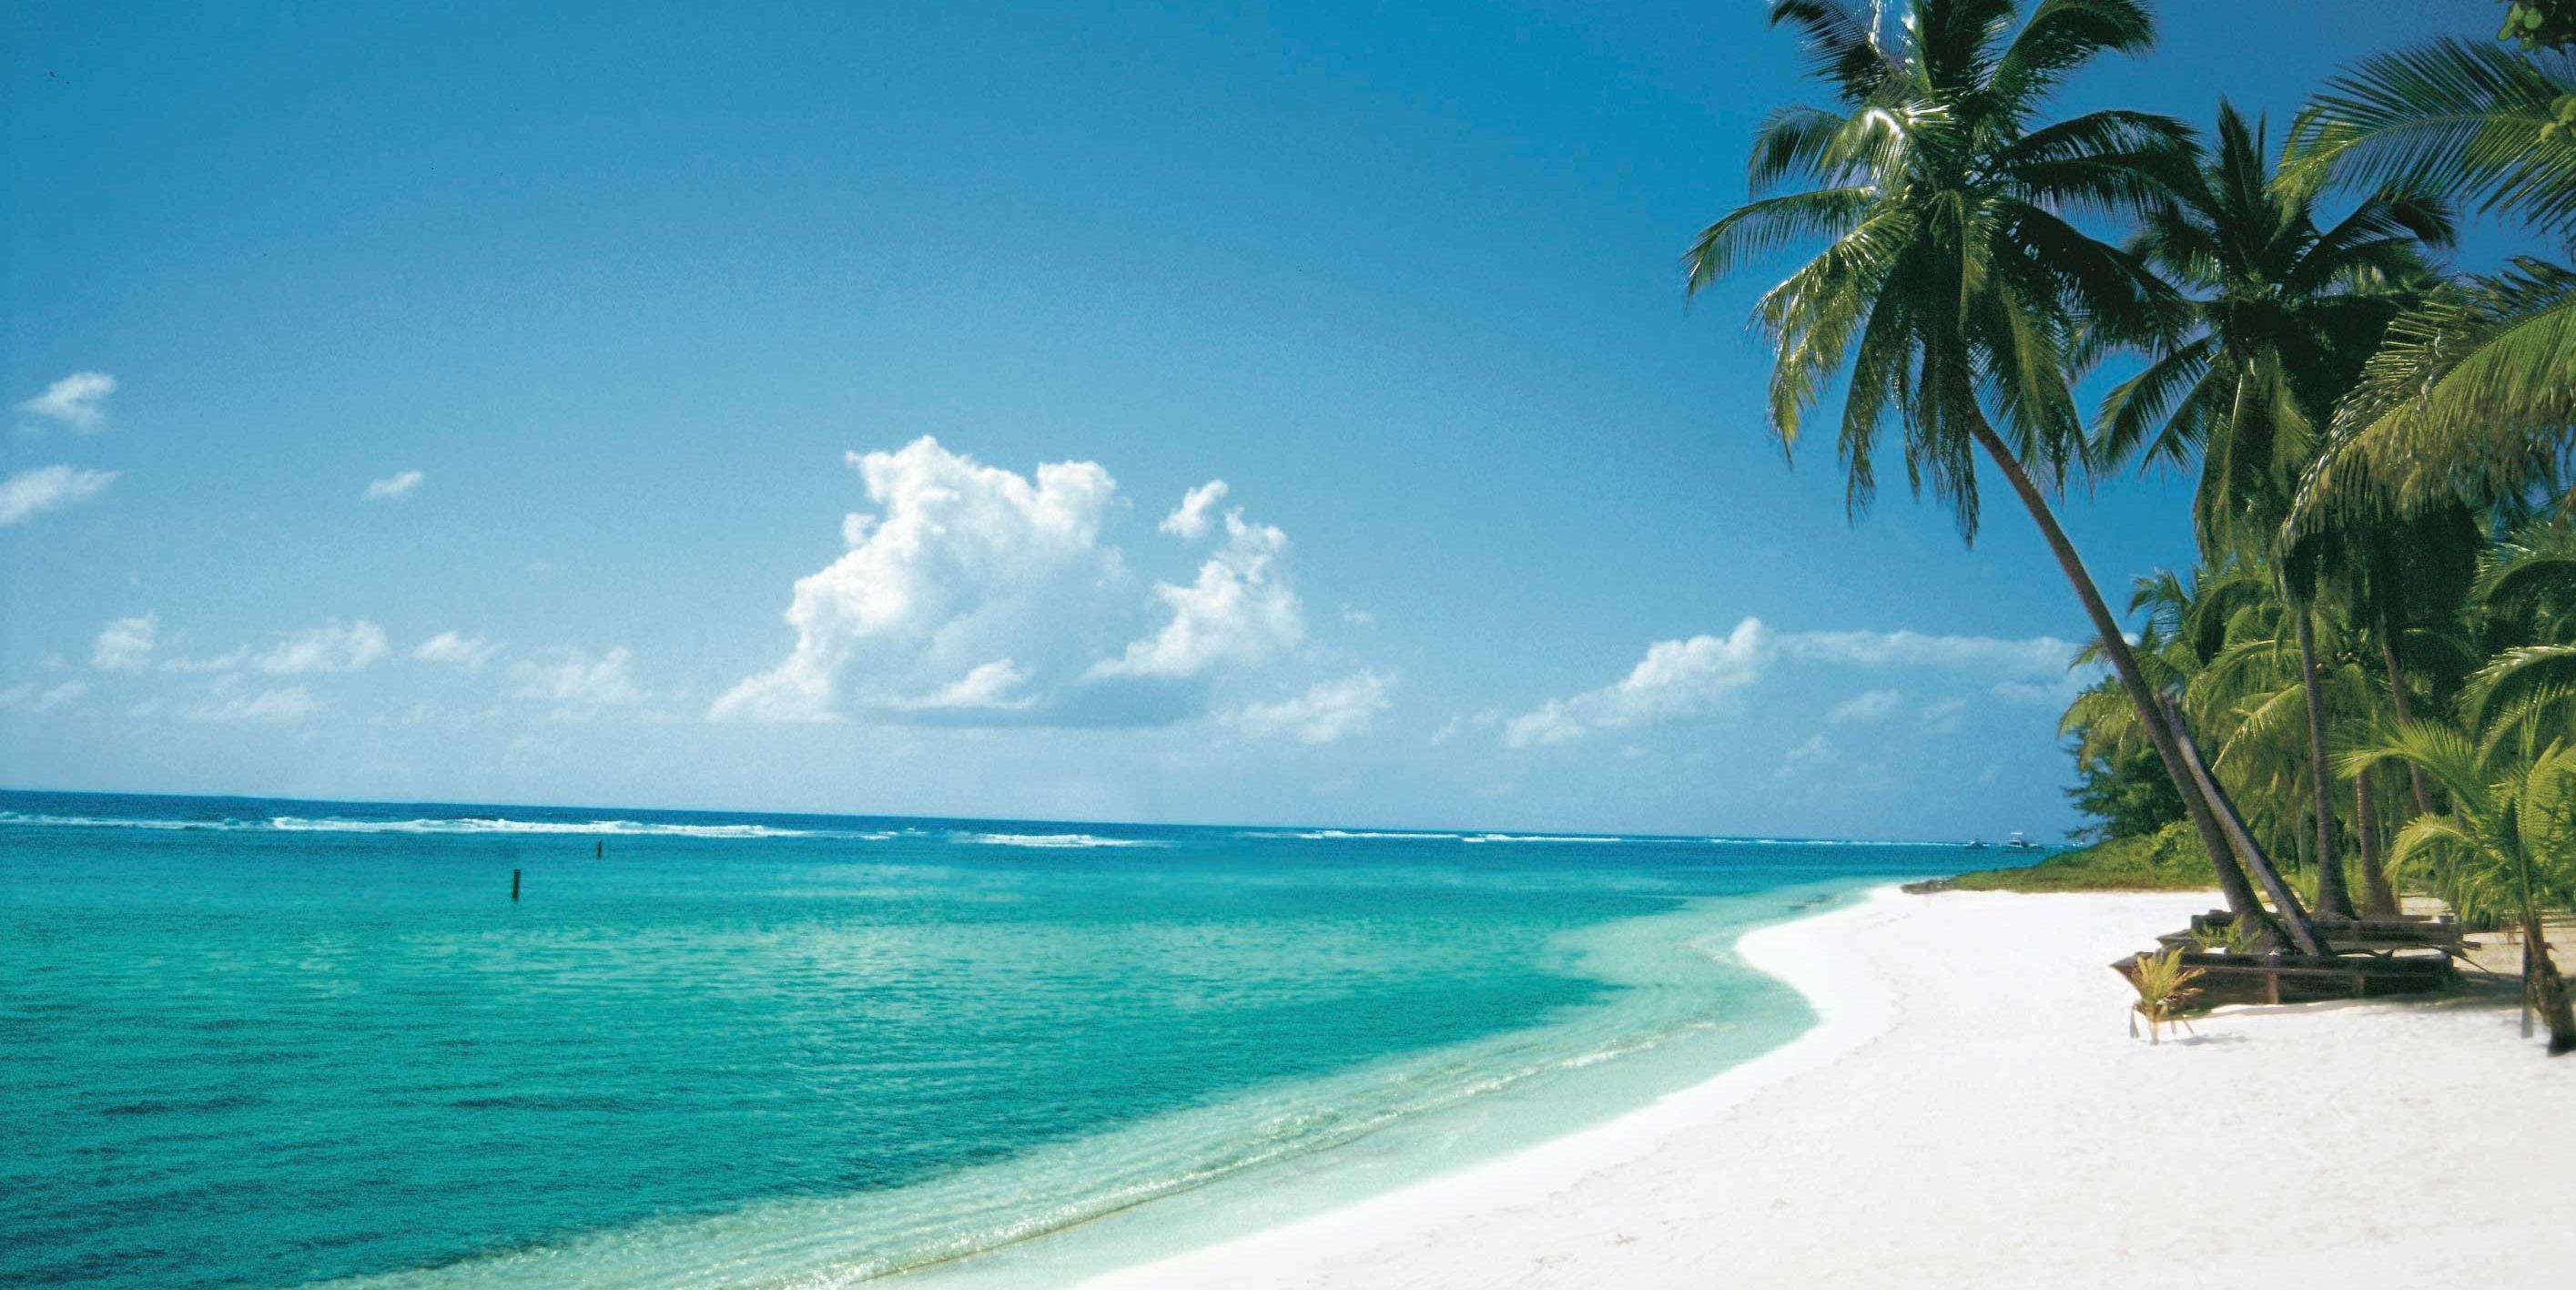 Cayman Islands HD wallpapers, 4K beauty, Stunning backgrounds, Caribbean bliss, 2830x1420 HD Desktop